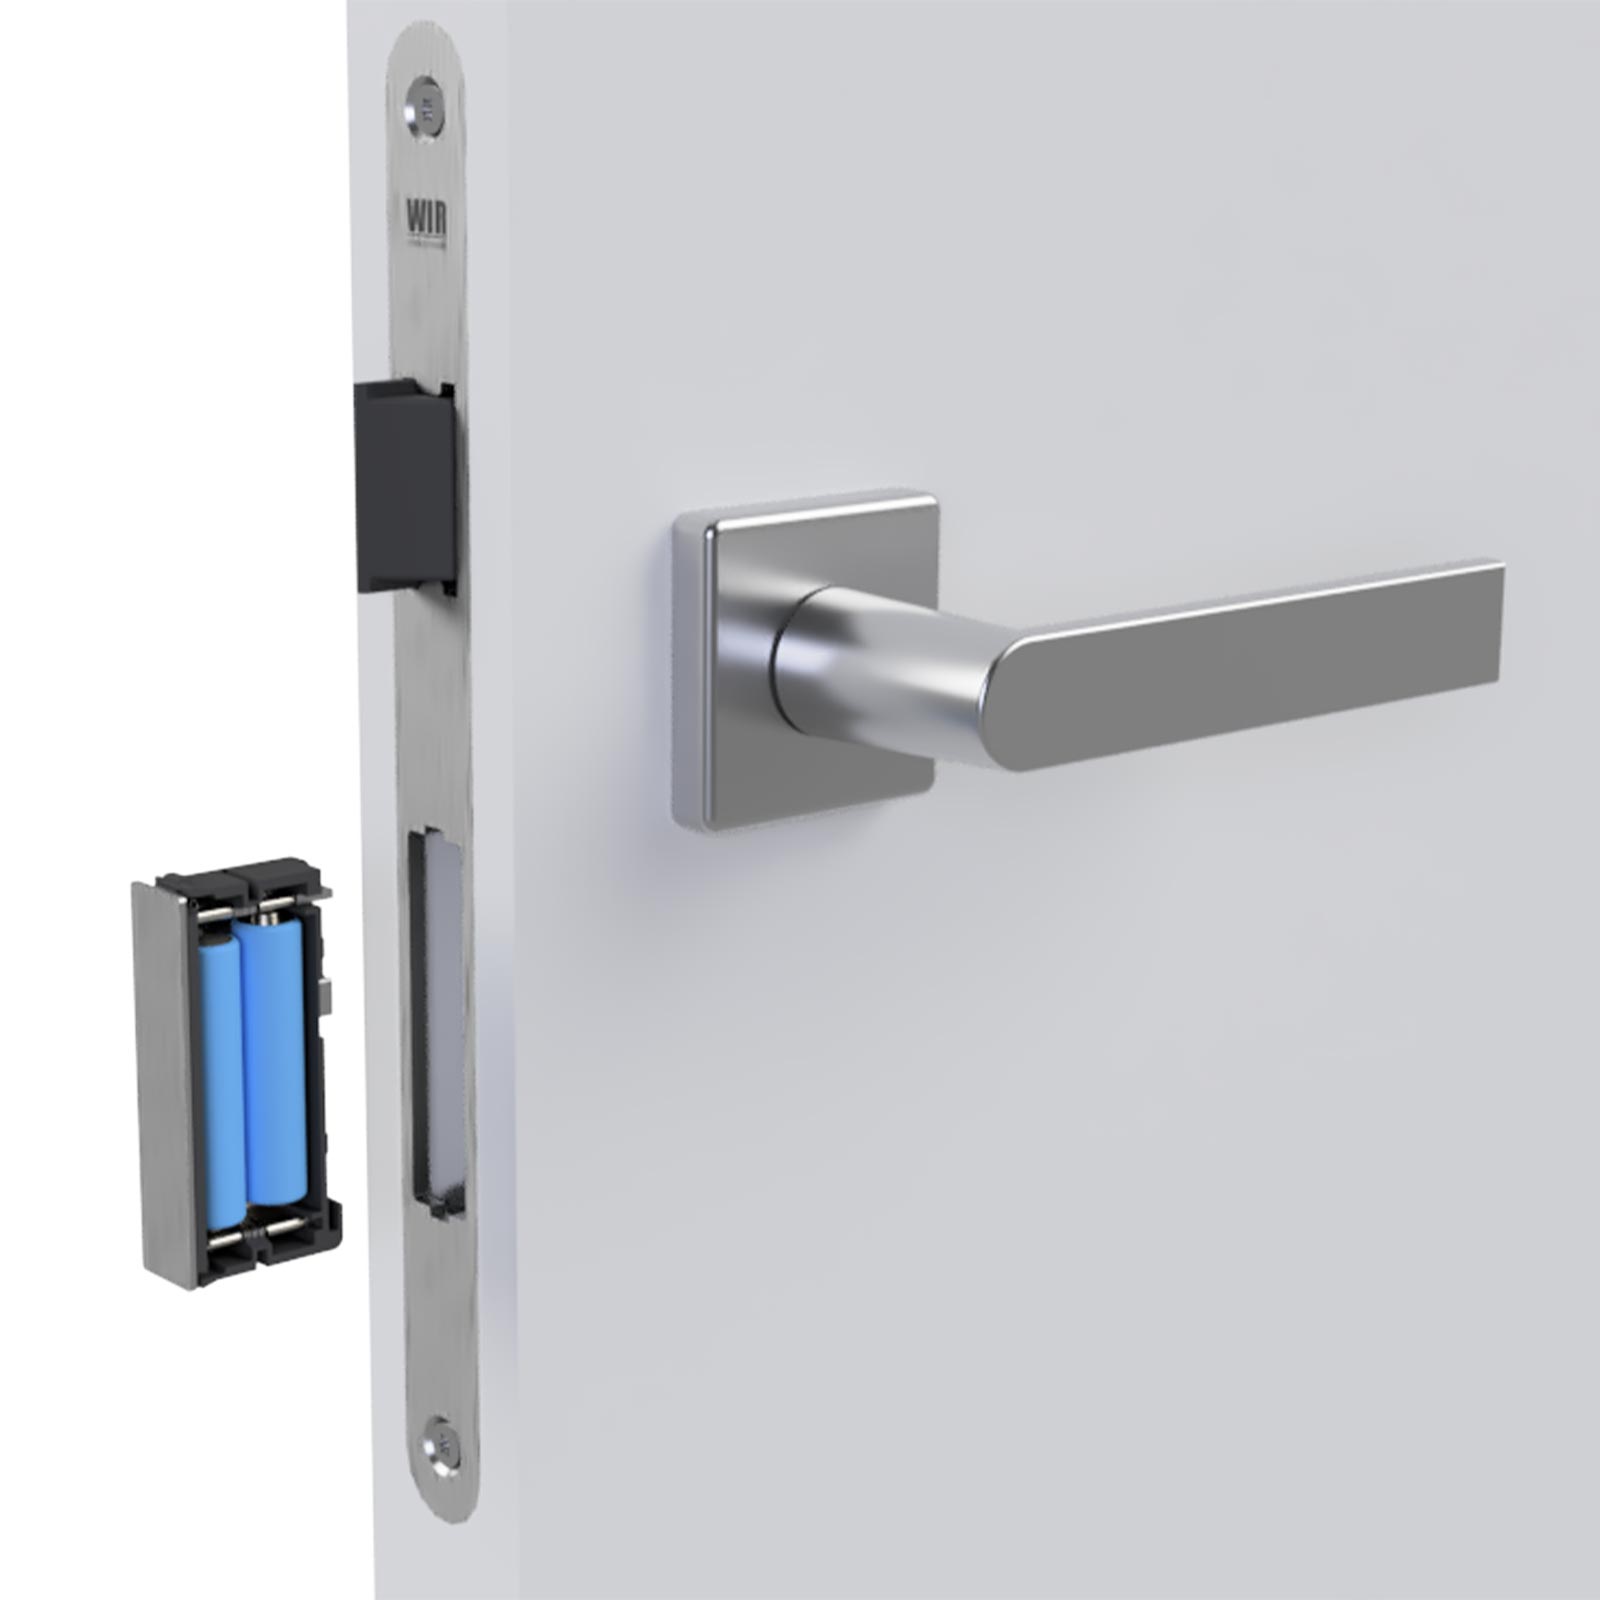 WIR eSCH320 Elektronisches Türschloss für DIN-Rechts/Links-Türen mit Panikfunktion Rechts/Links